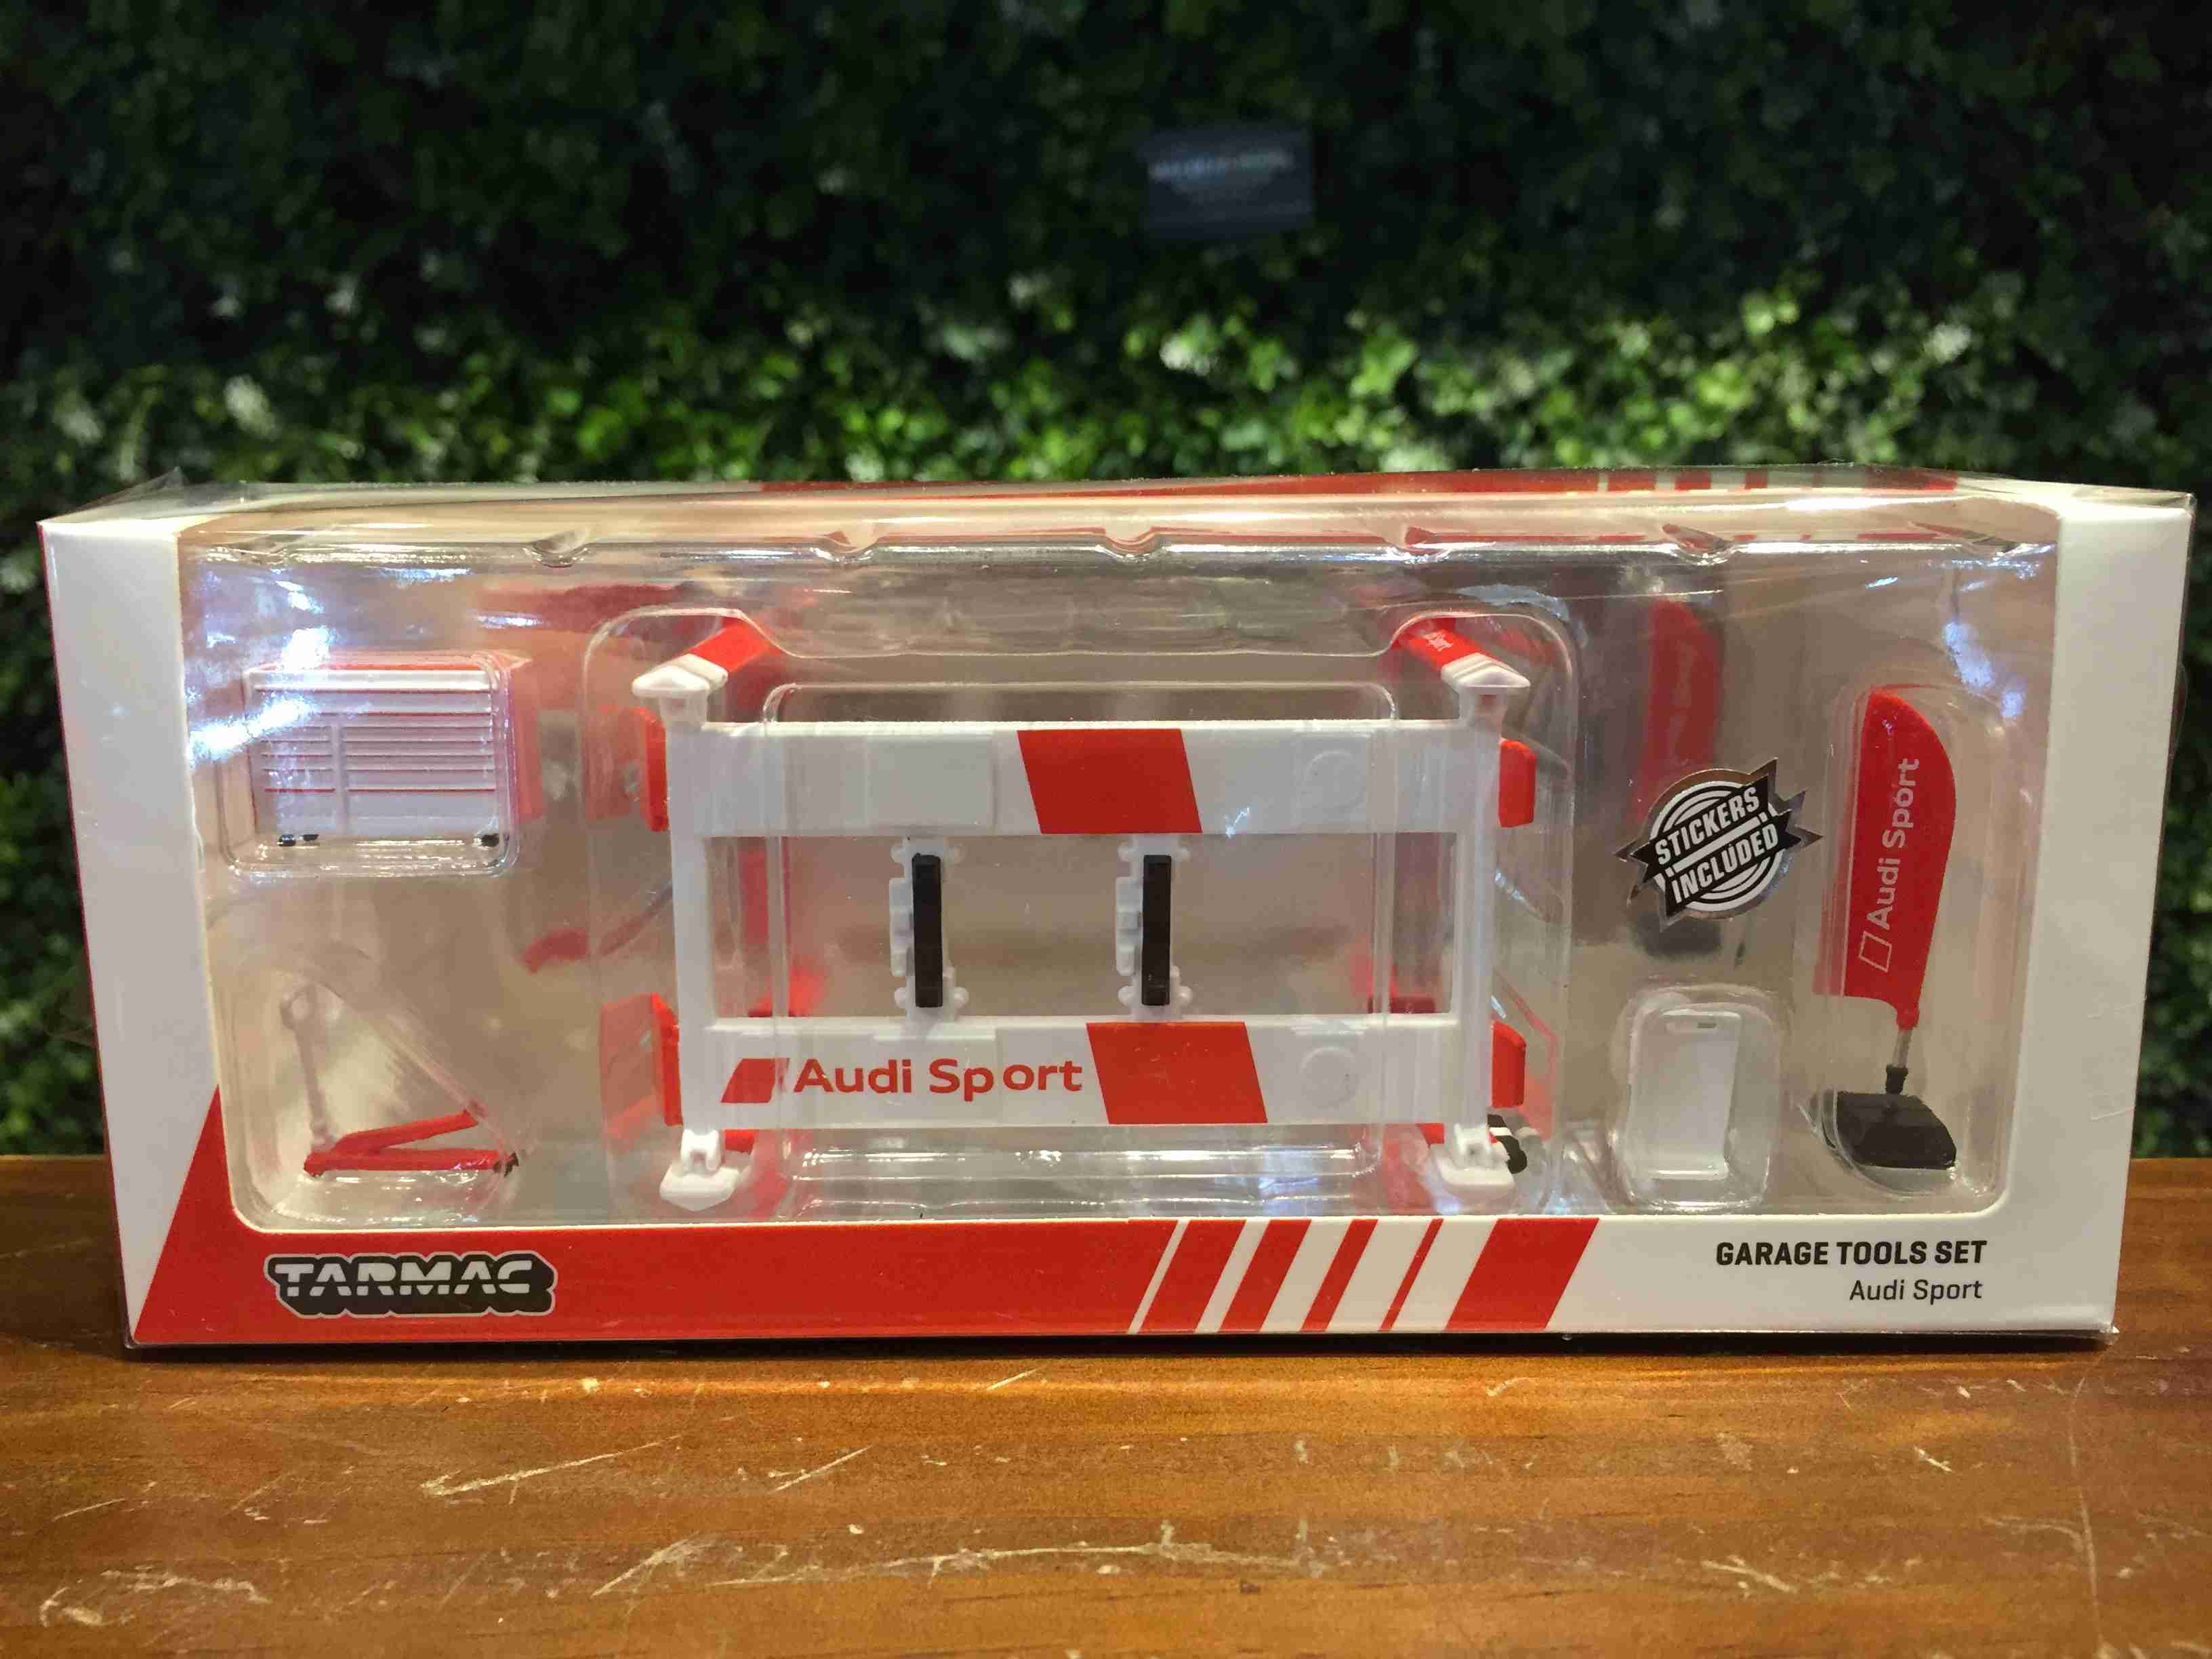 1/64 Tarmac Garage Tool Set Audi Sport 工具組 T64A001AS【MGM】